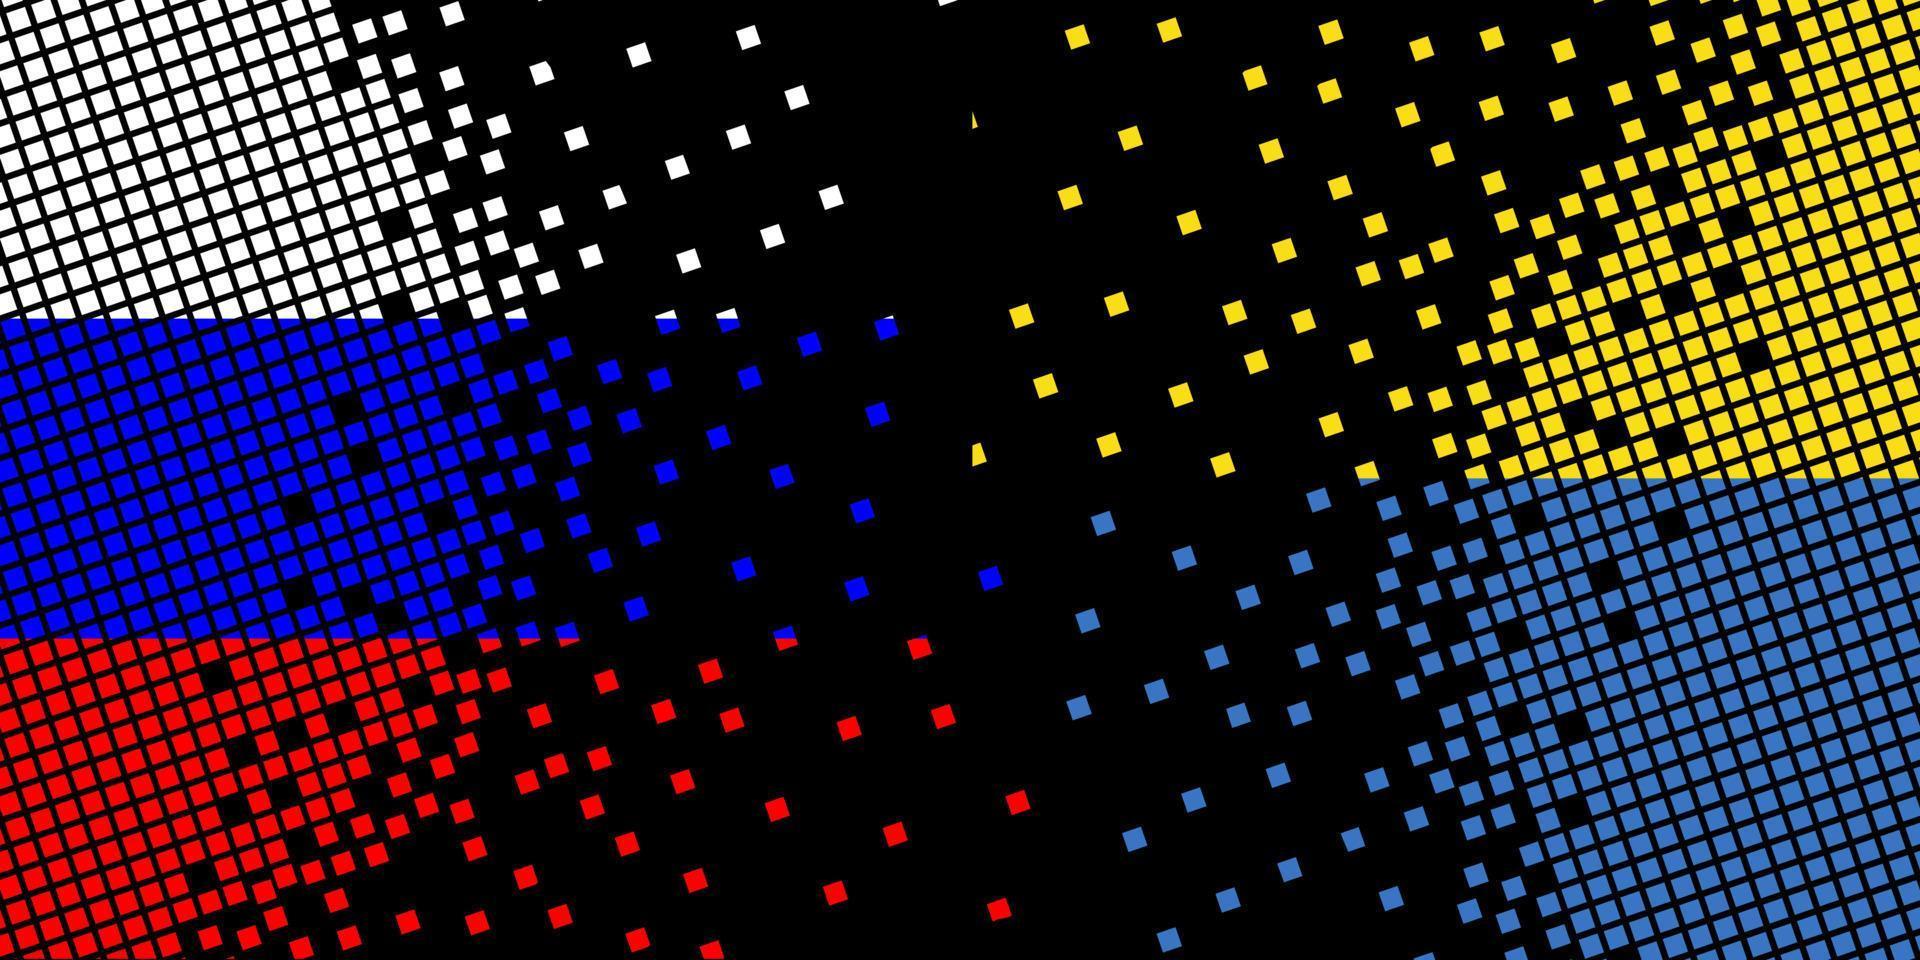 pixel art con bandera de rusia y ucrania. los puntos de píxeles crecen concentrándose dentro de la bandera. pixel art que representa la colisión y la independencia de los puntos dentro de la bandera de rusia y ucrania. vector